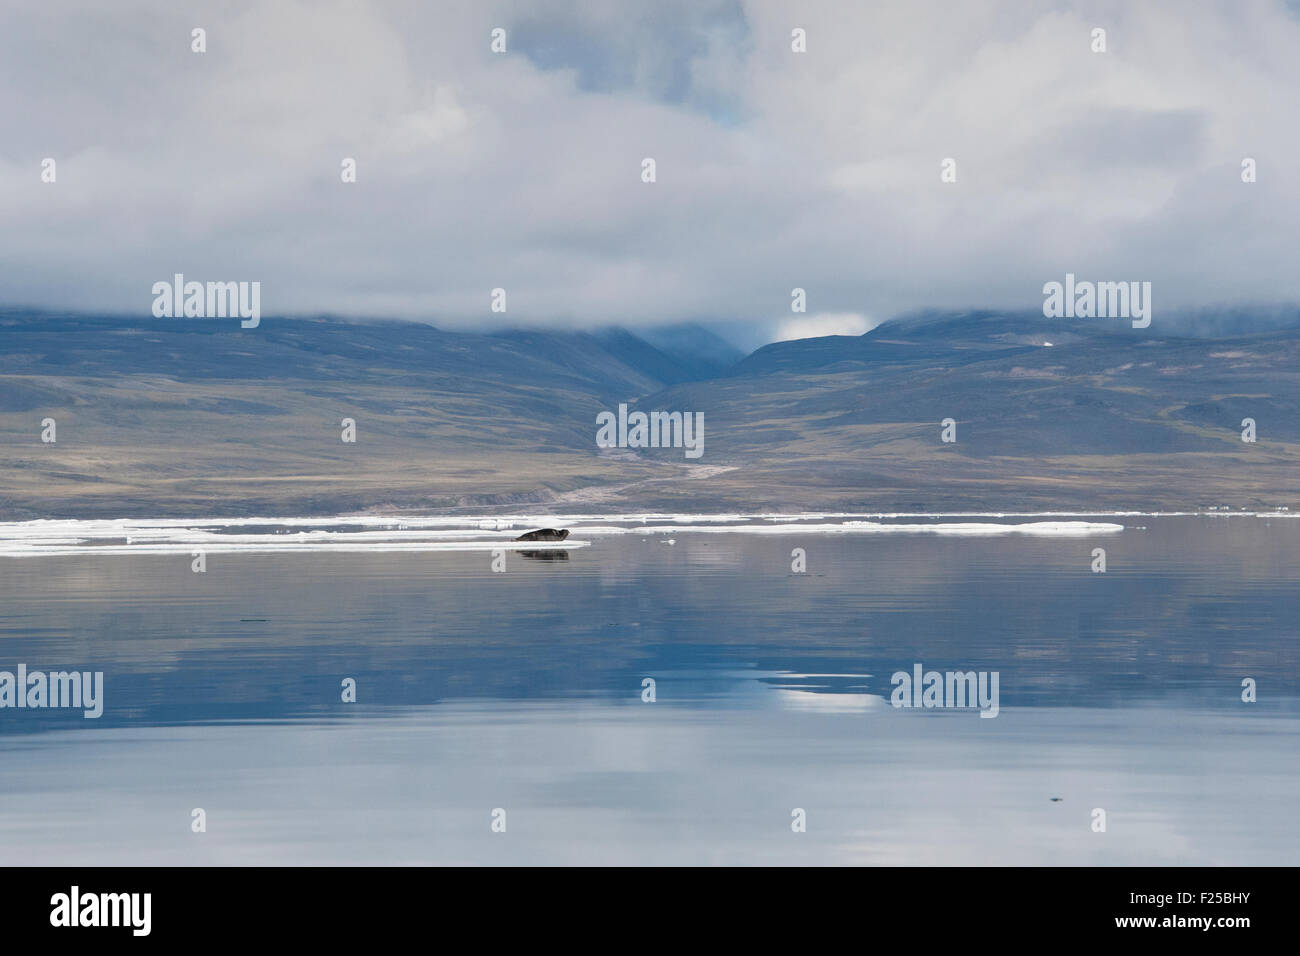 Seal reposant sur l'iceberg, avec des réflexions et des montagnes en arrière-plan, l'île de Baffin, de l'Arctique canadien Banque D'Images